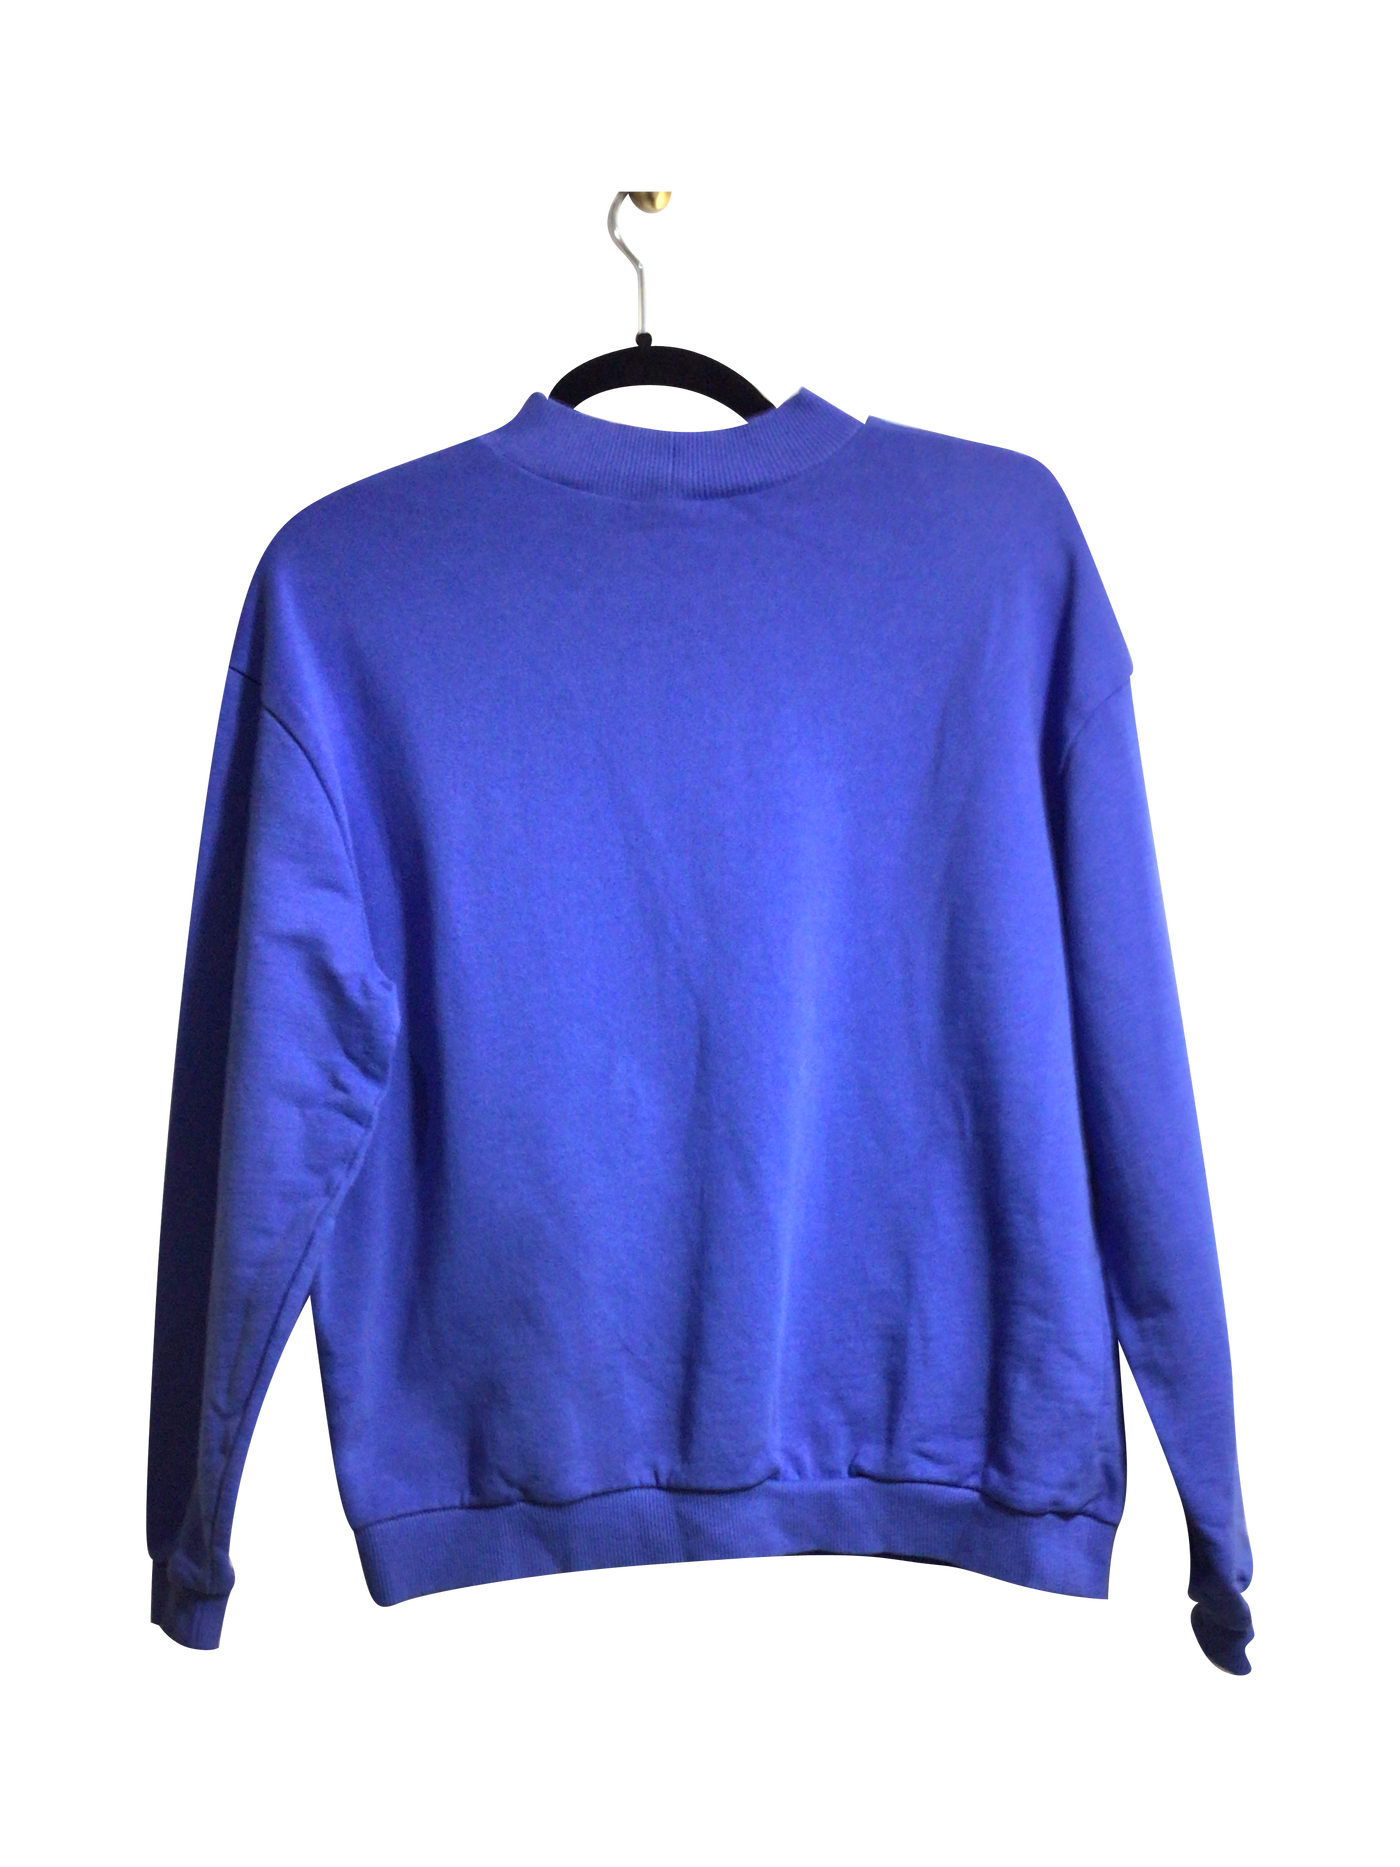 ASOS Women Sweaters Regular fit in Blue - Size 4 | 8.99 $ KOOP